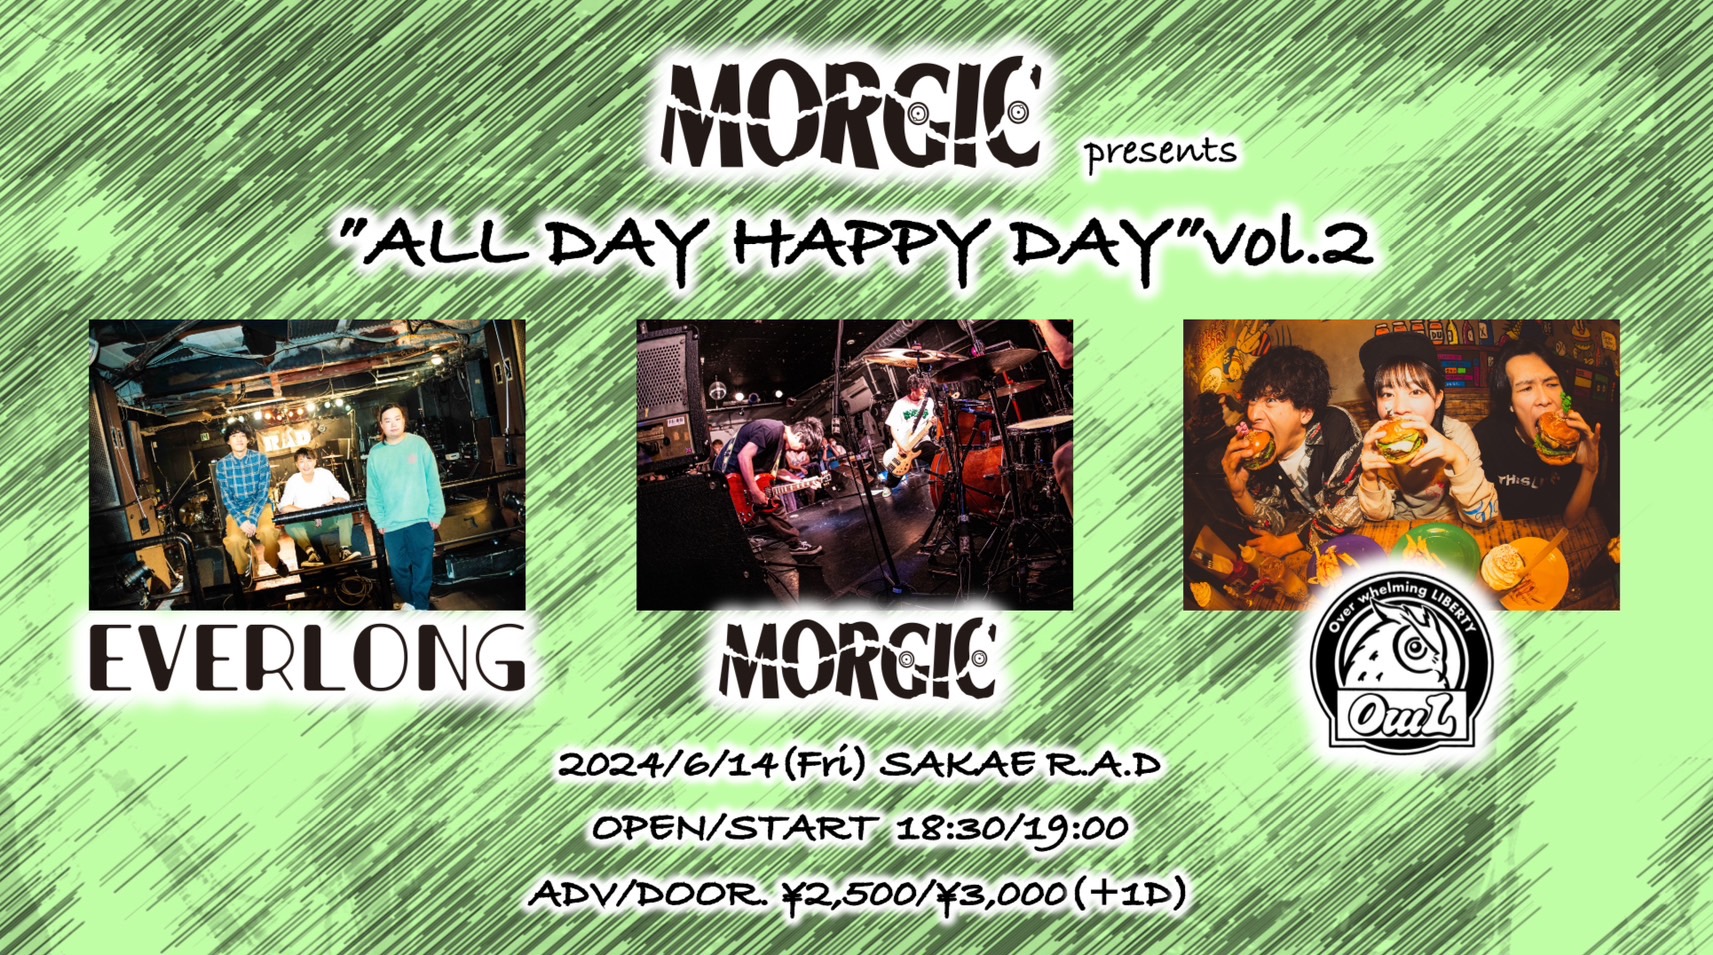 MORGIC presents "ALL DAY HAPPY DAY"vol.2